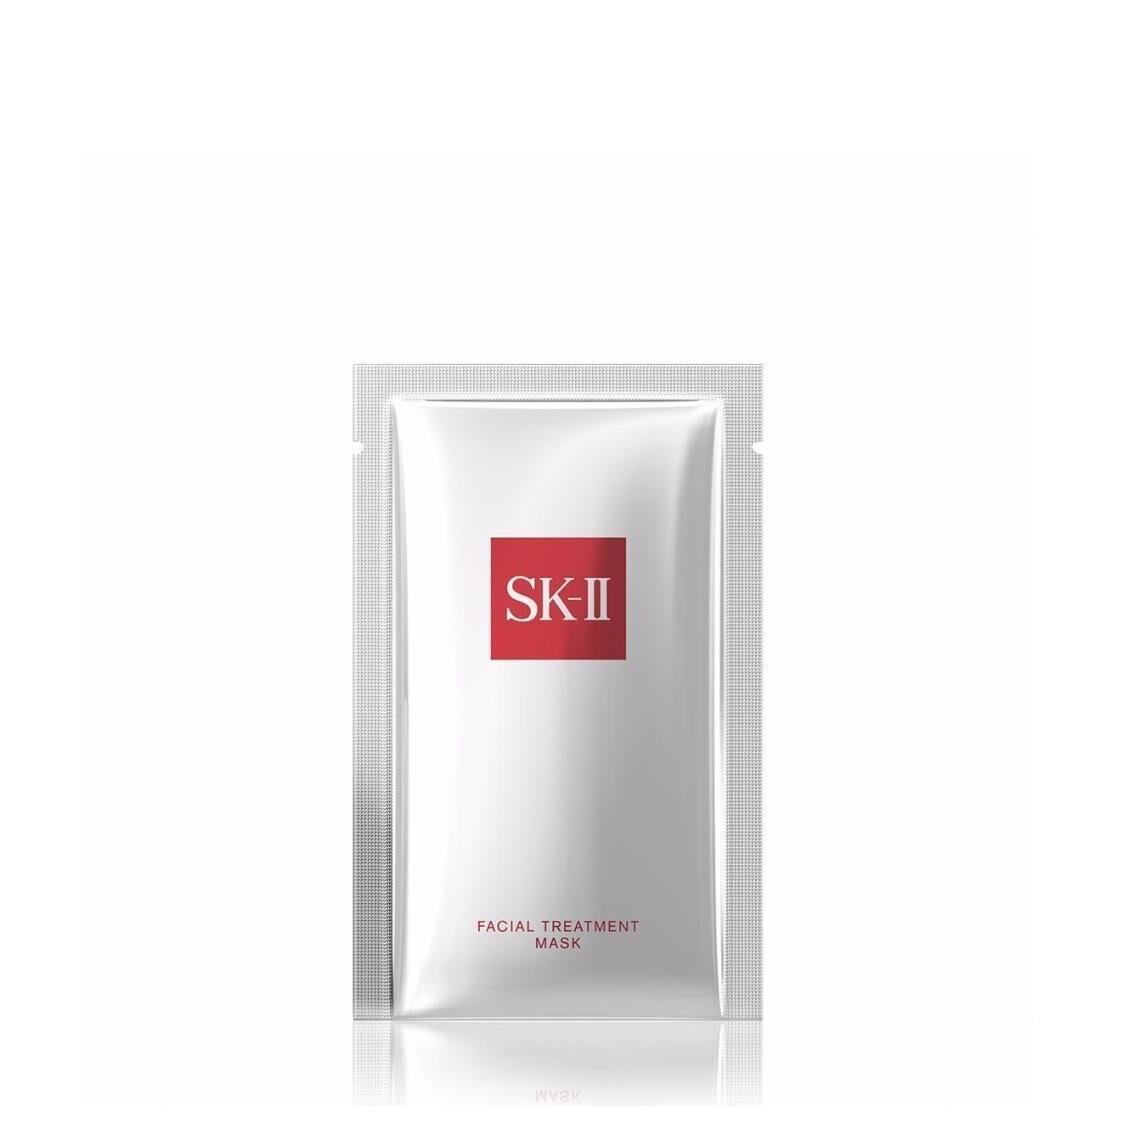 SK-II Facial Treatment Mask 6pc